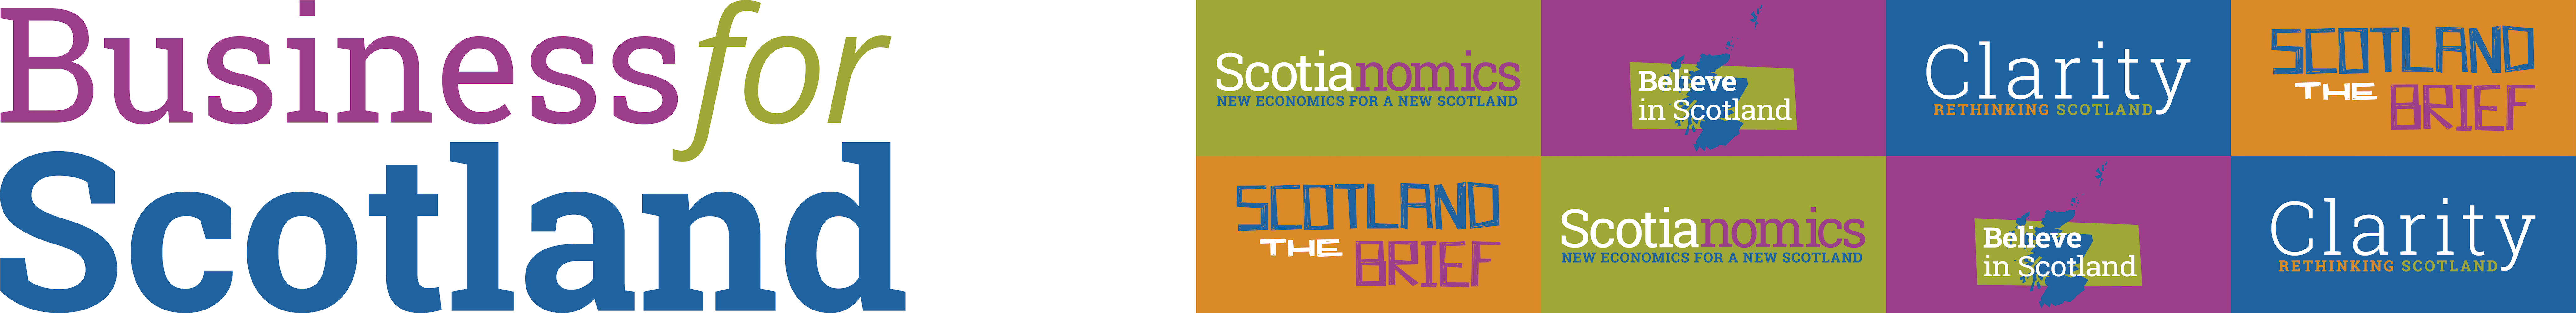 Business for Scotland